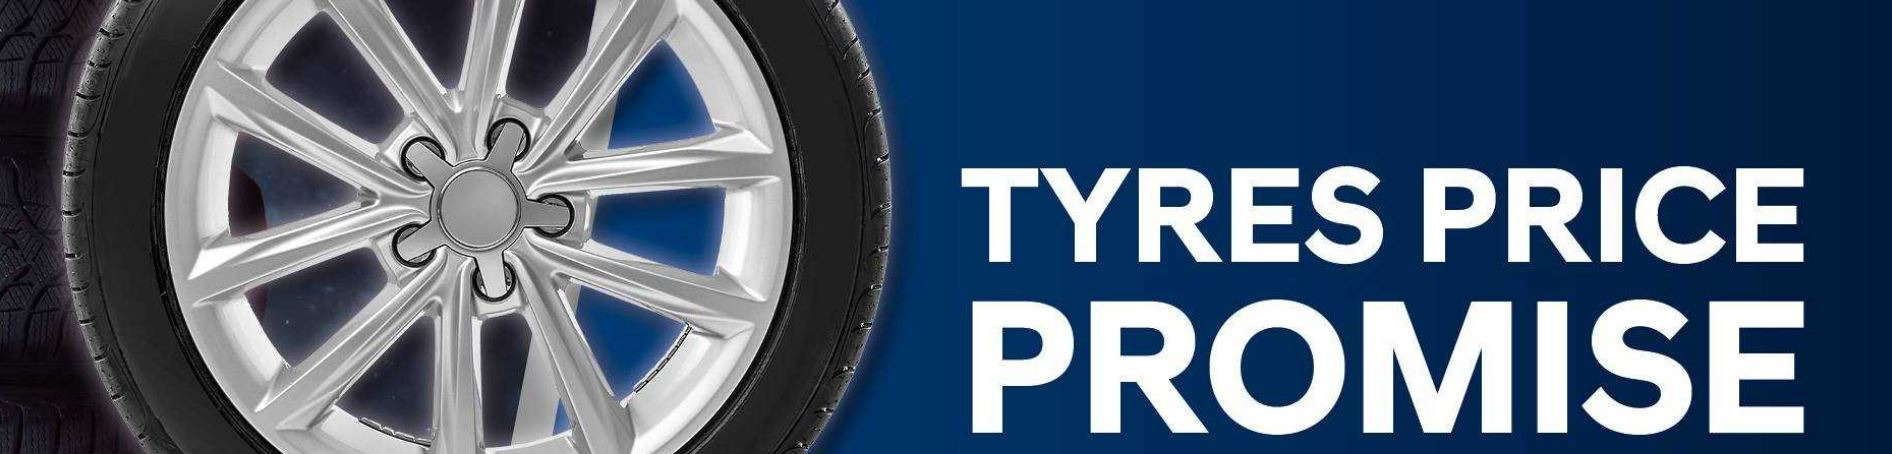 Hyundai Tyres Price Promise